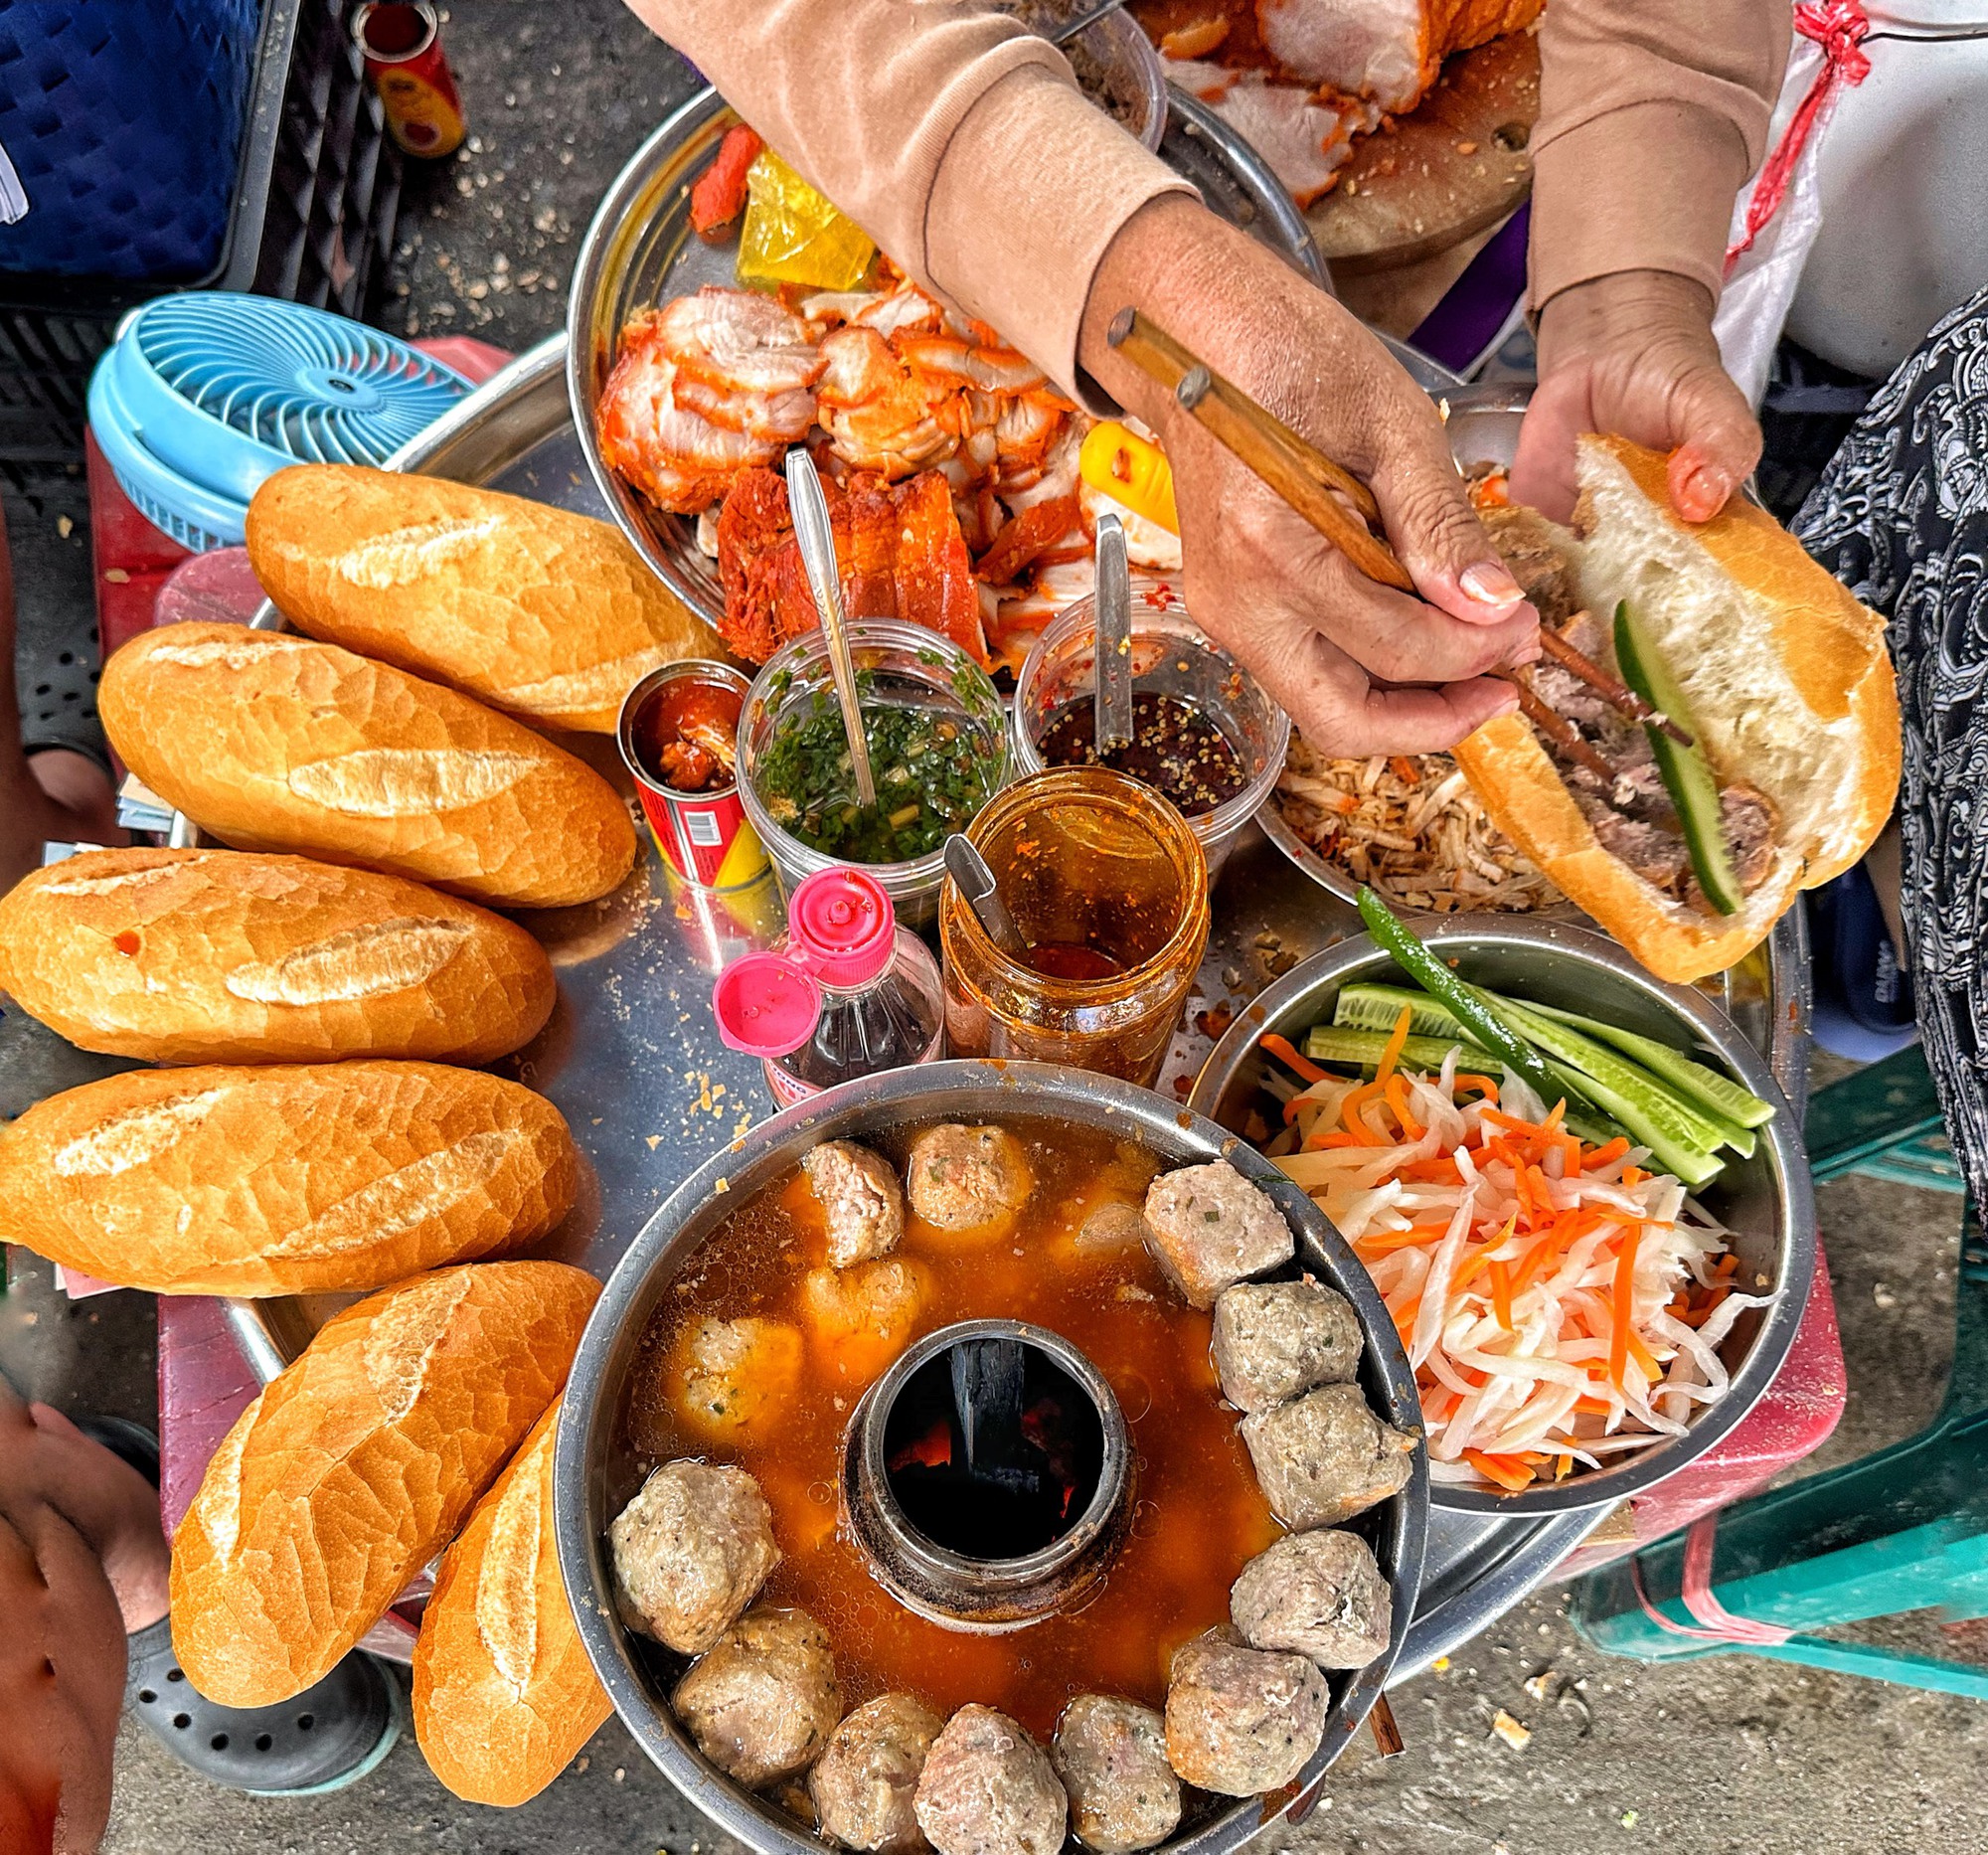 Gánh bánh mì nửa thế kỷ ngon có tiếng chợ An Đông: ‘Chén cơm’ cả gia đình - Ảnh 3.